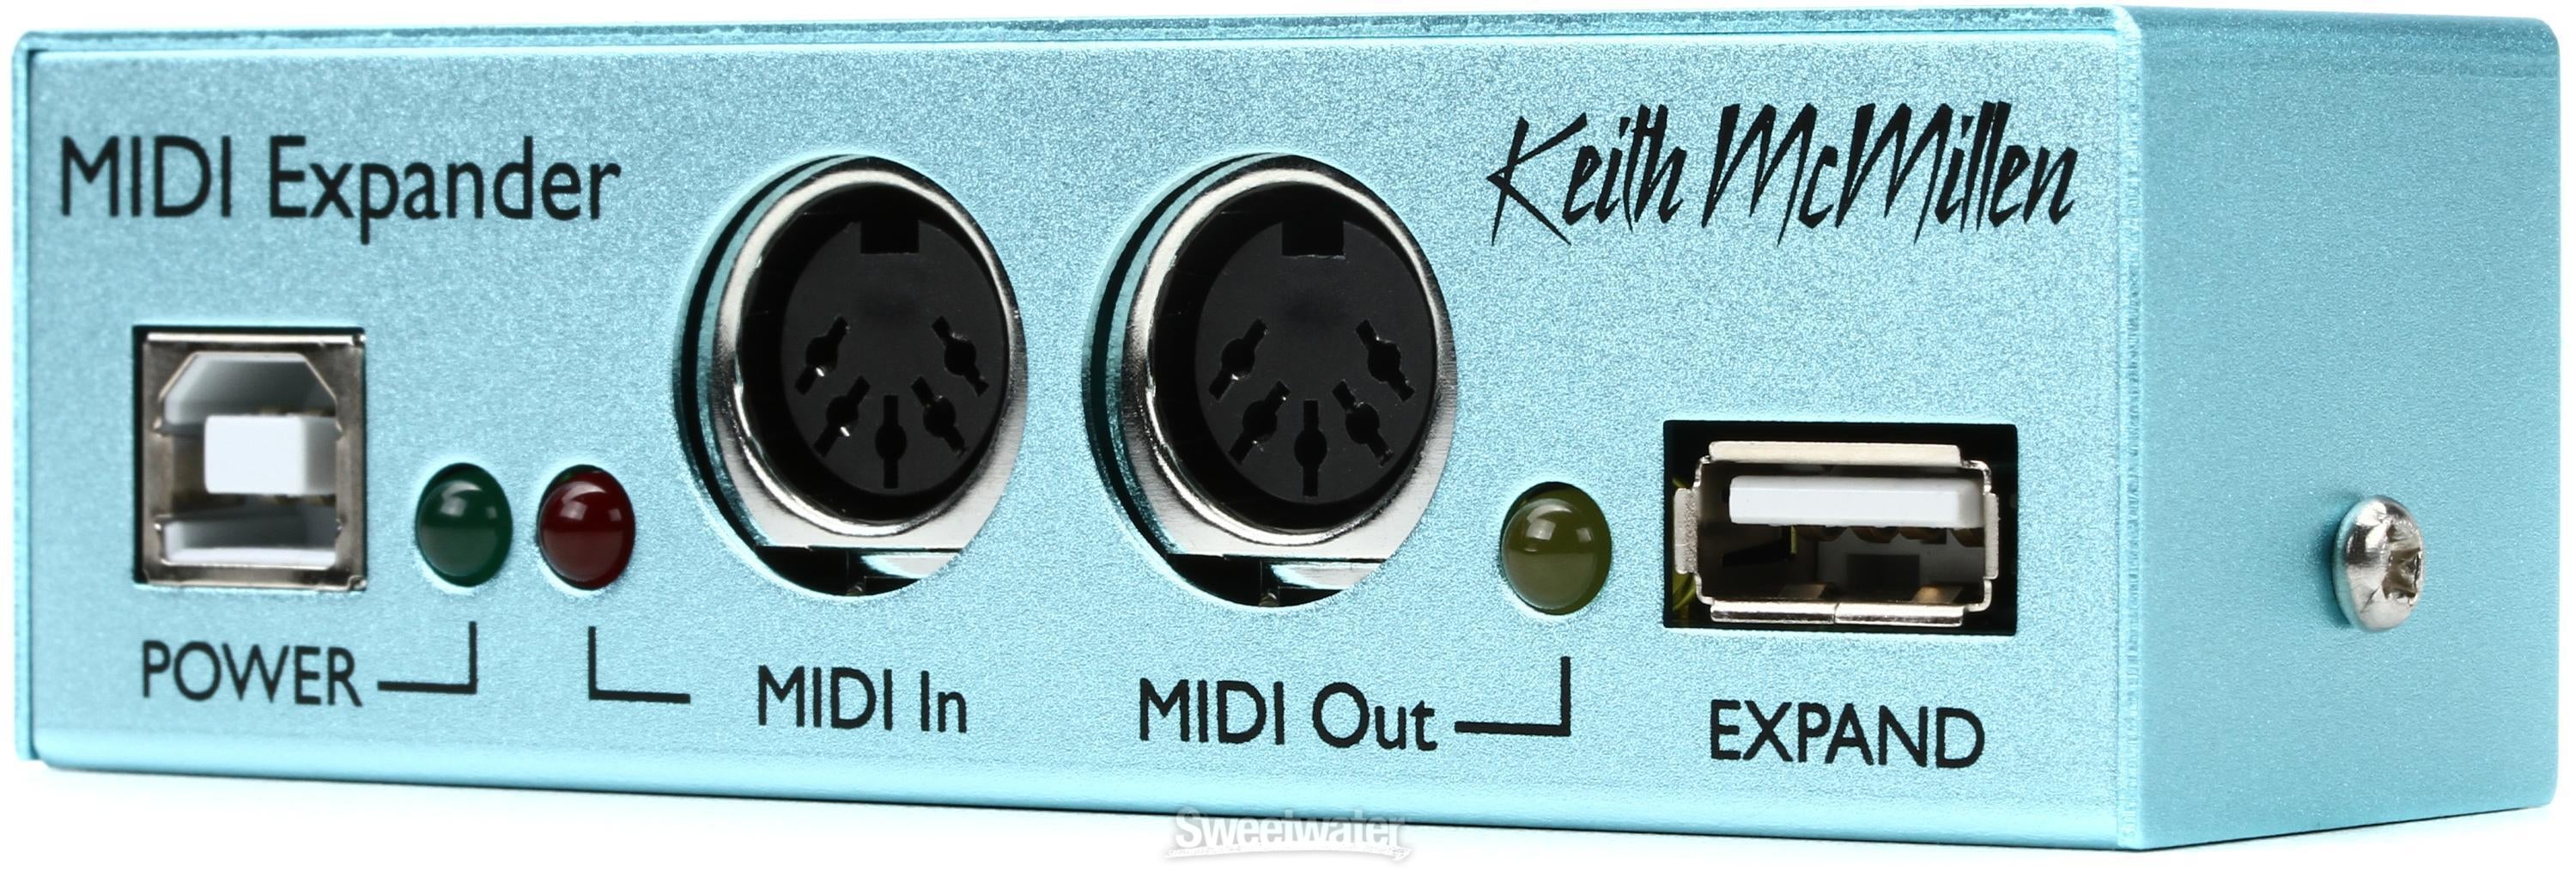 【割引直売】Keith Mcmillen 12 Step (専用MIDI拡張ボックス付き) キースマクミラン 12ステップ フットコントローラ フットキーボード MIDIキーボード、コントローラー